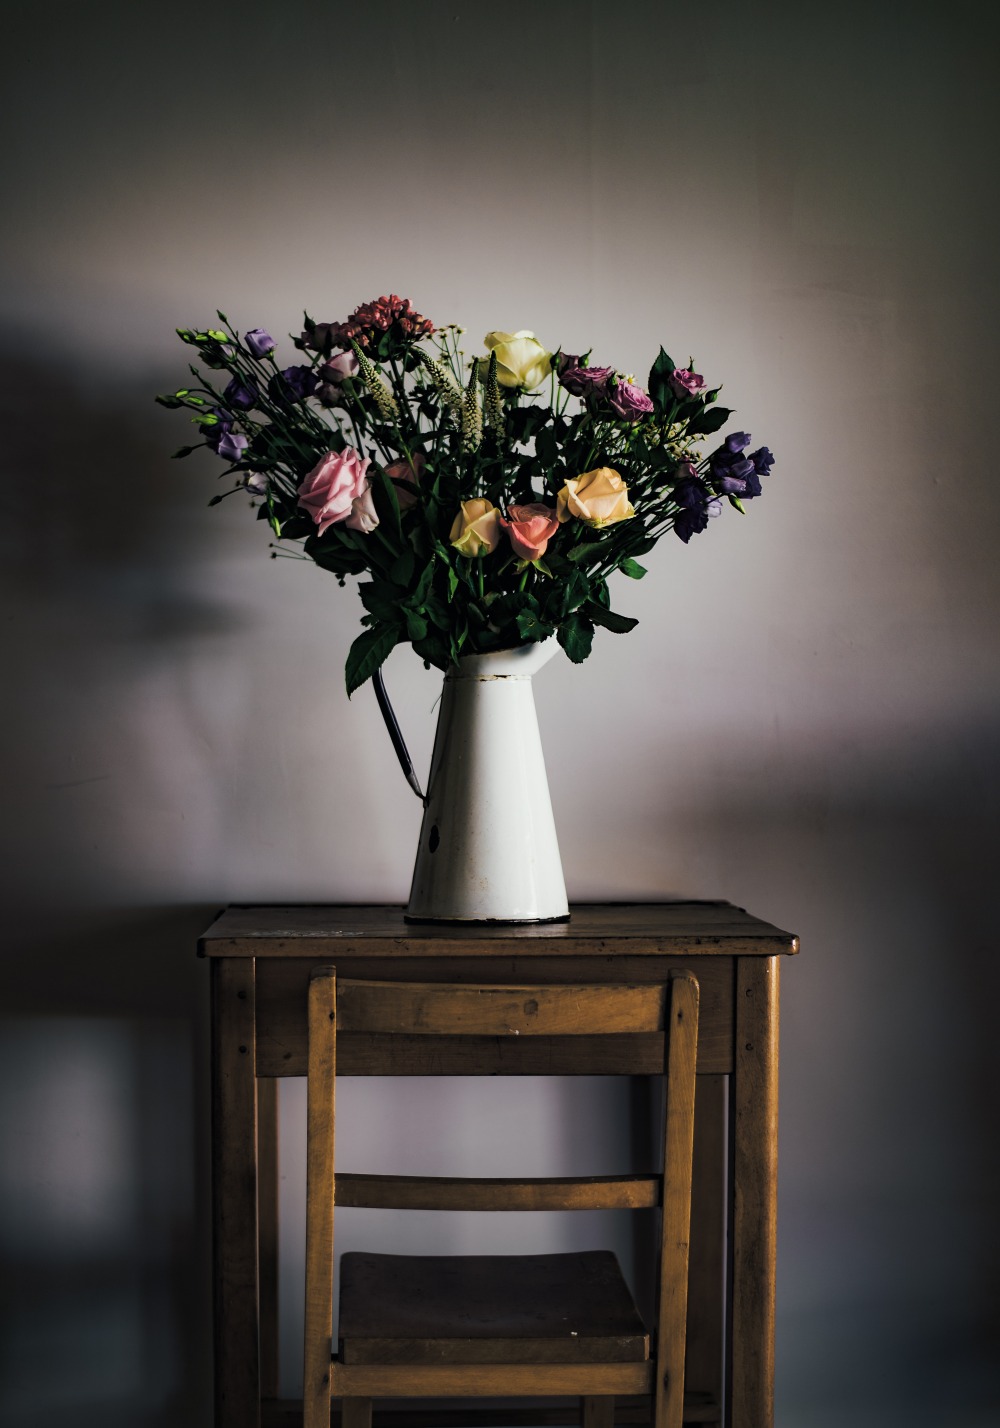 dekoracje do szarego mieszkania, wazon z kwiatami, ozdoby w szarym mieszaniu